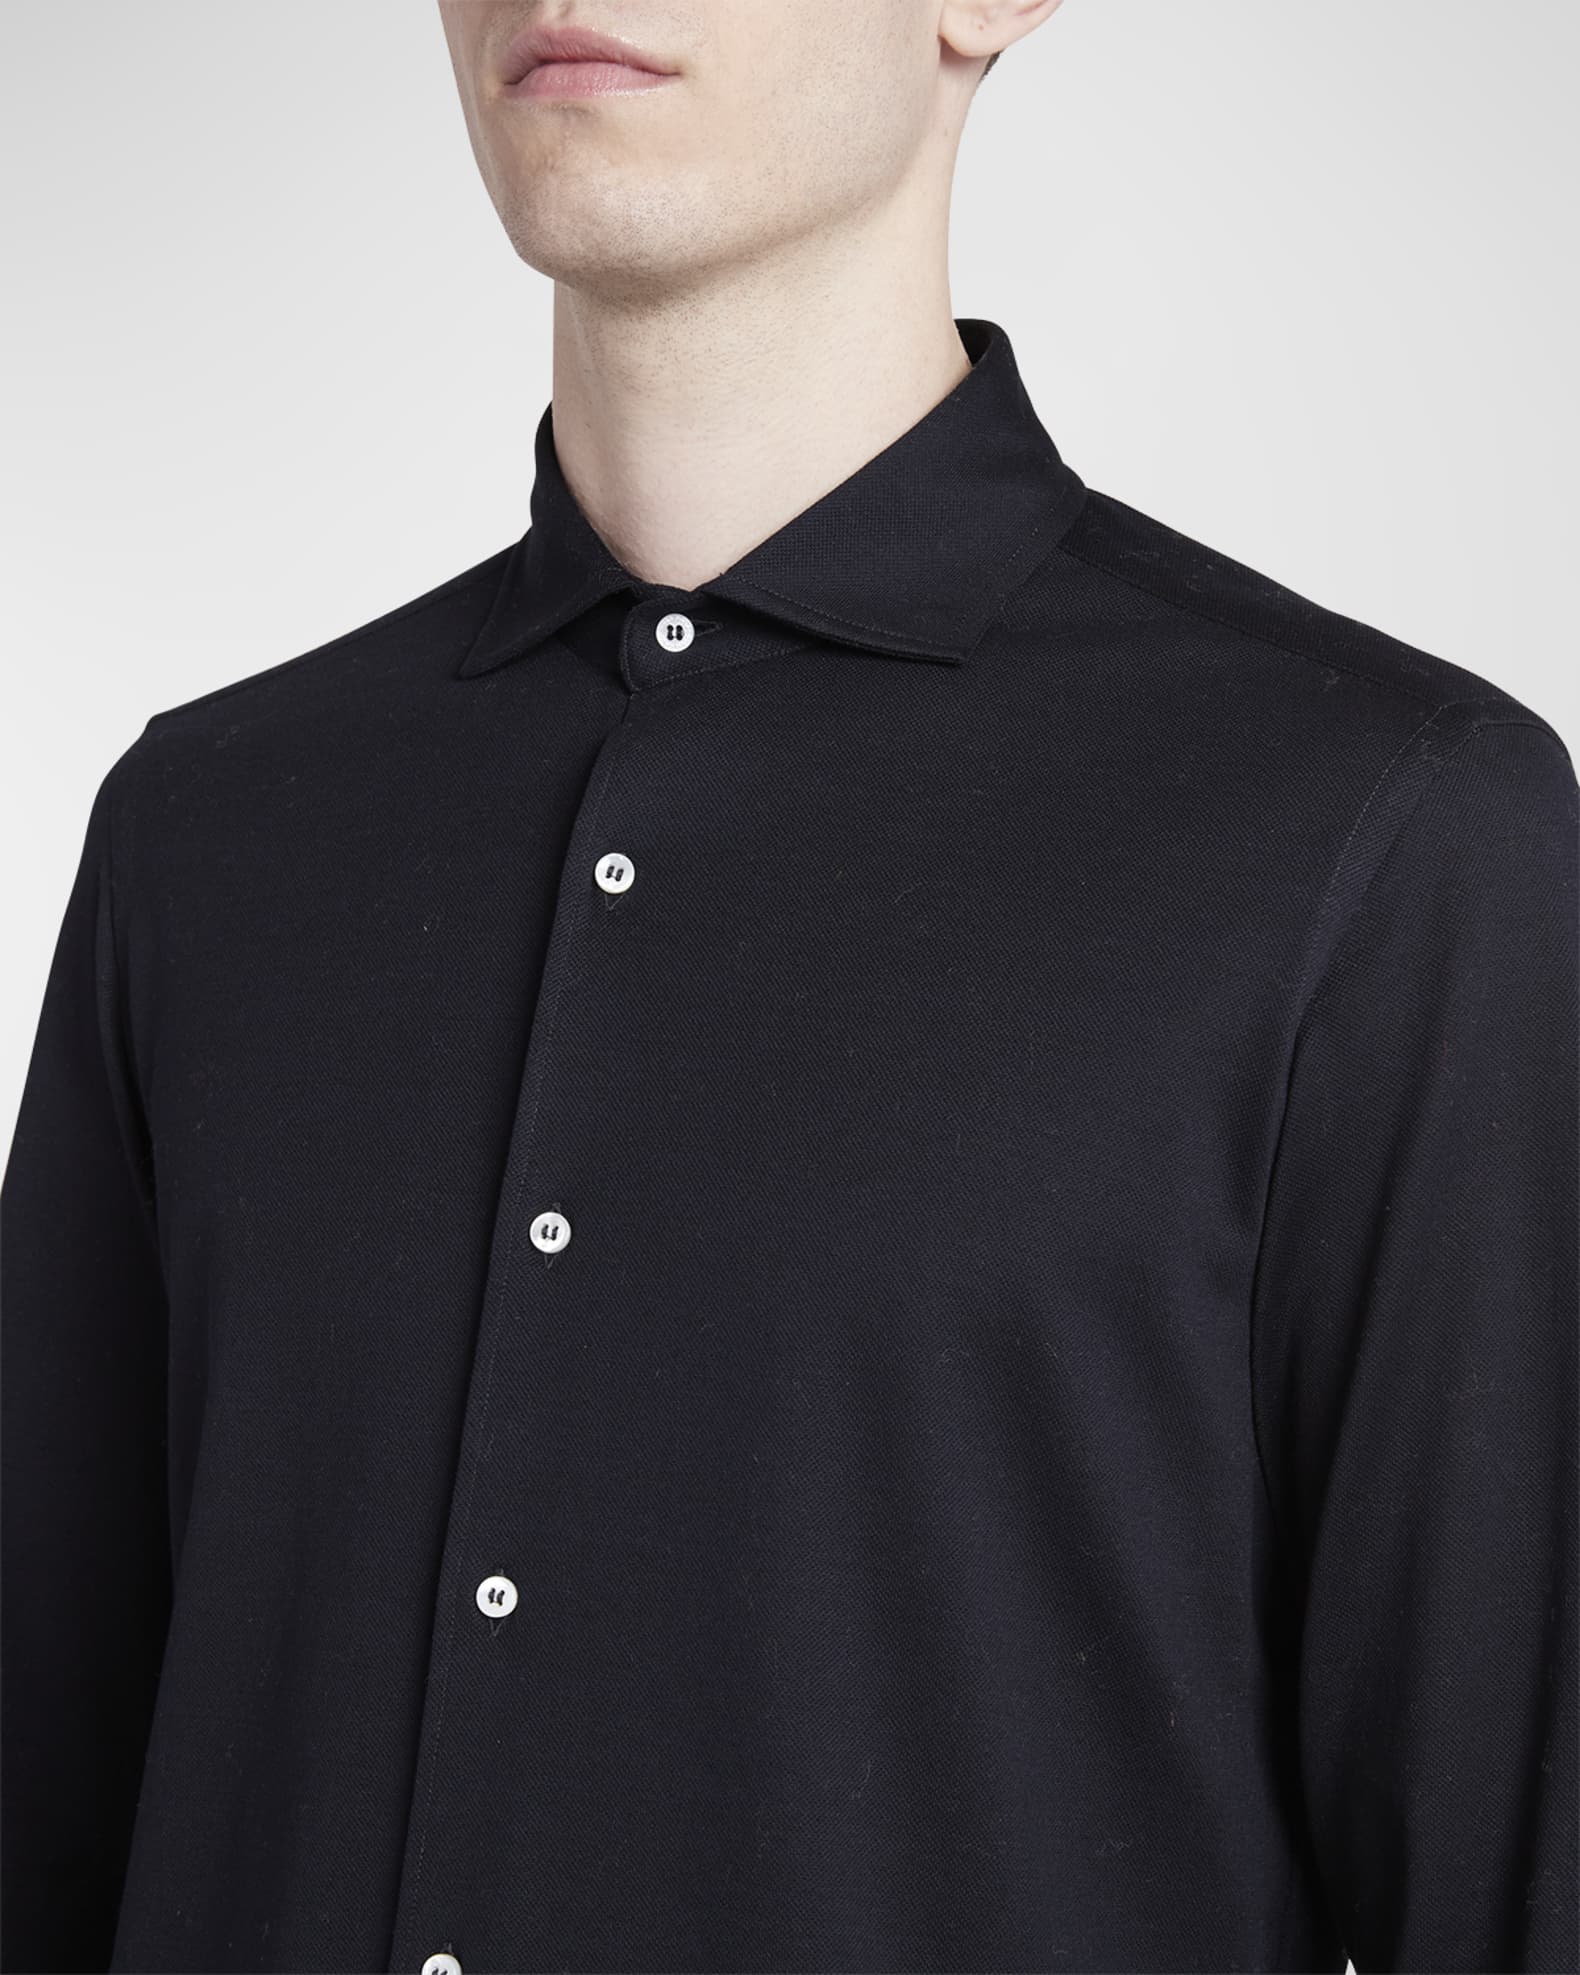 Agui cotton Oxford shirt